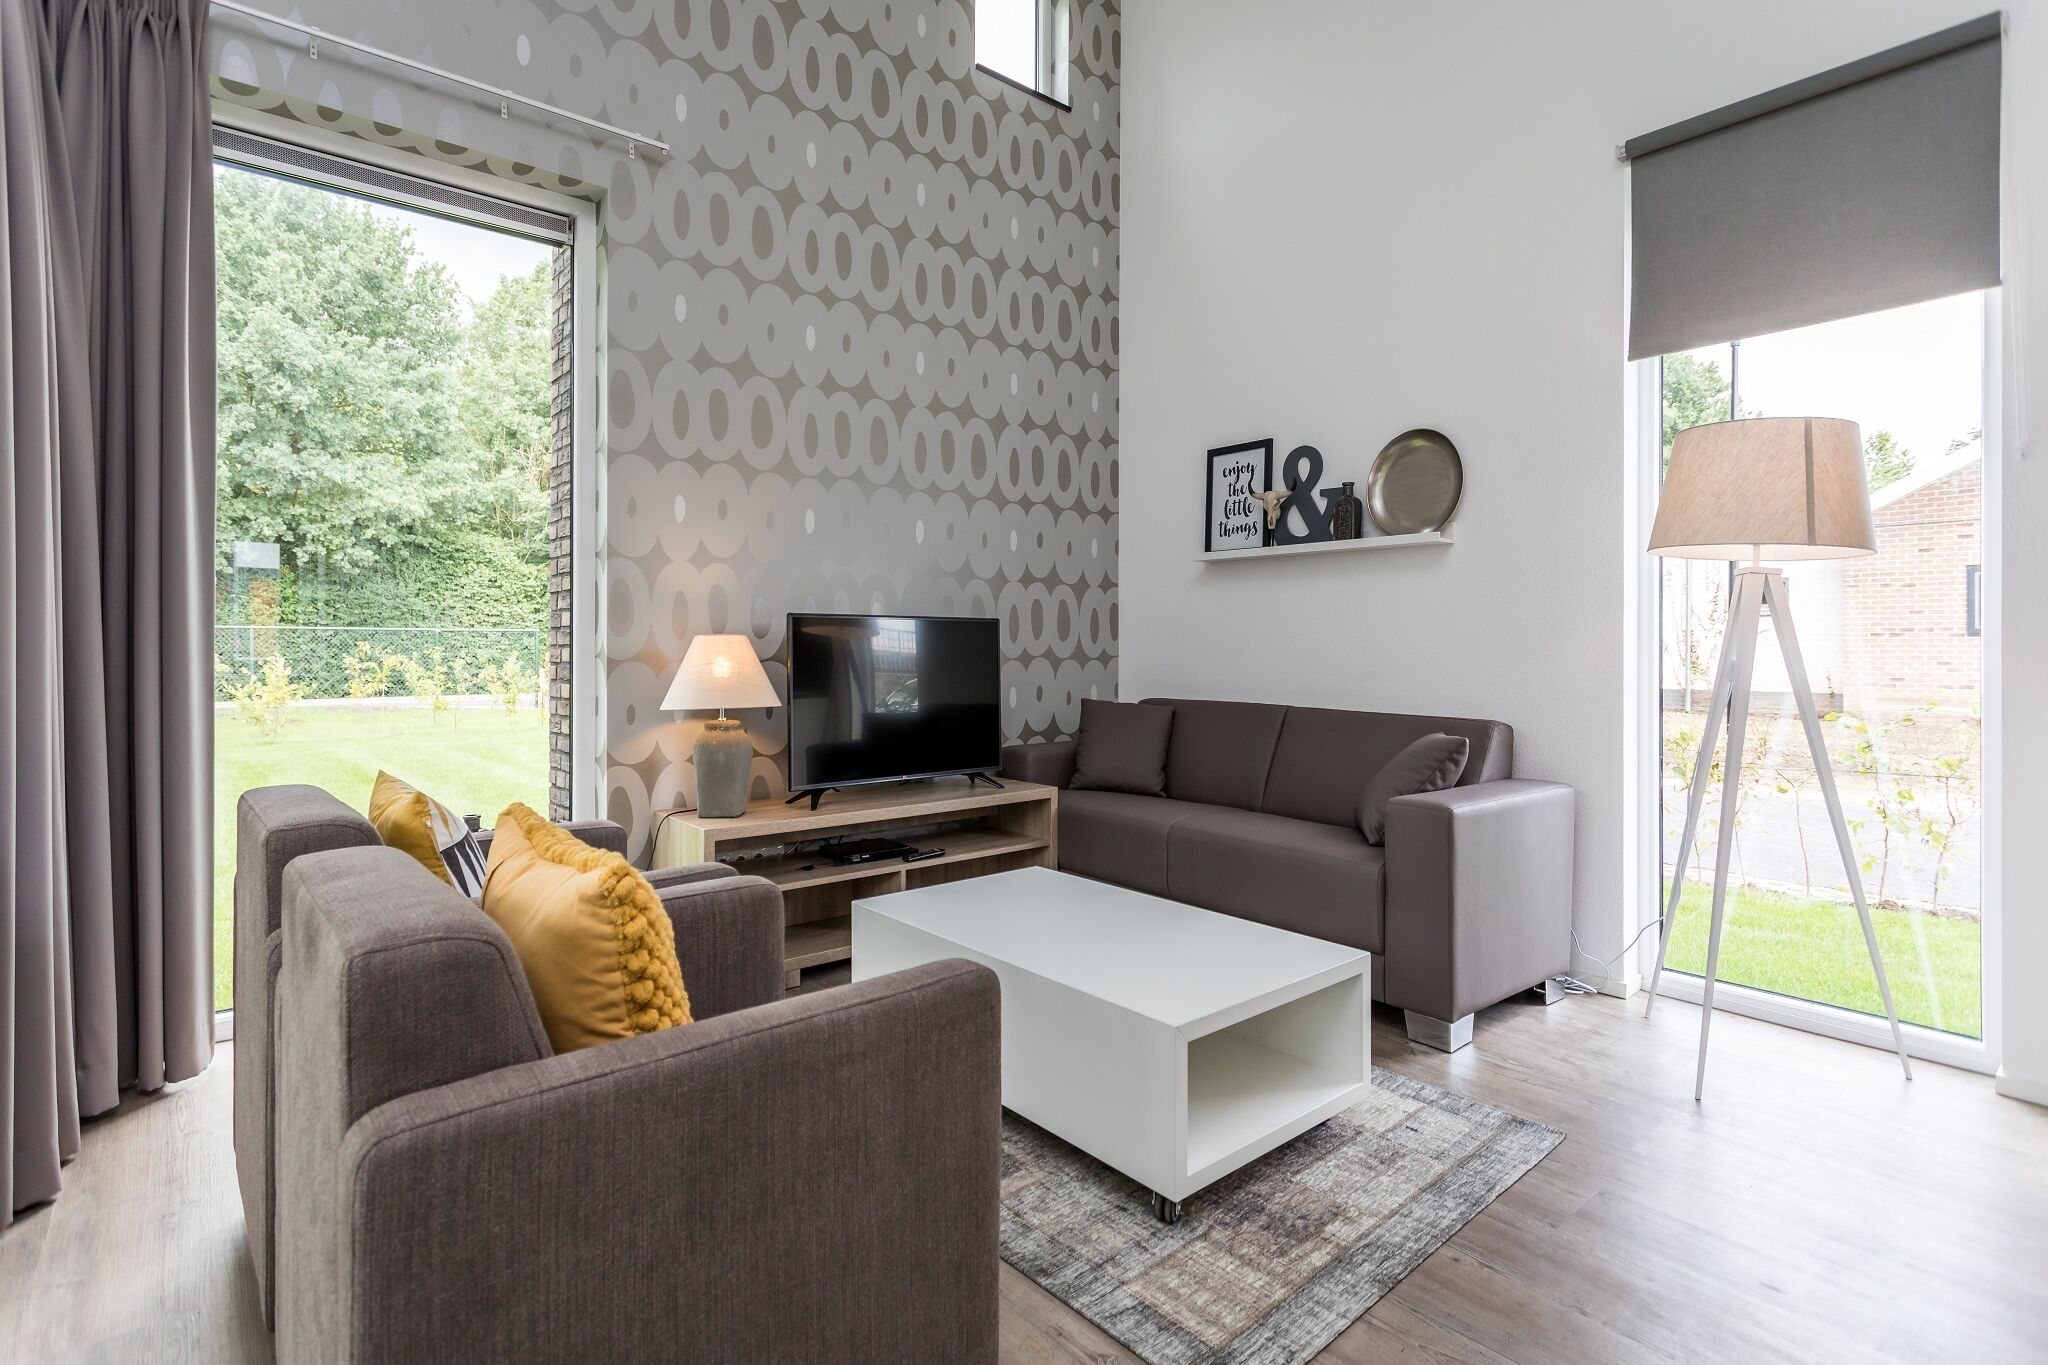 Villa avec une terrasse couverte à Limburg